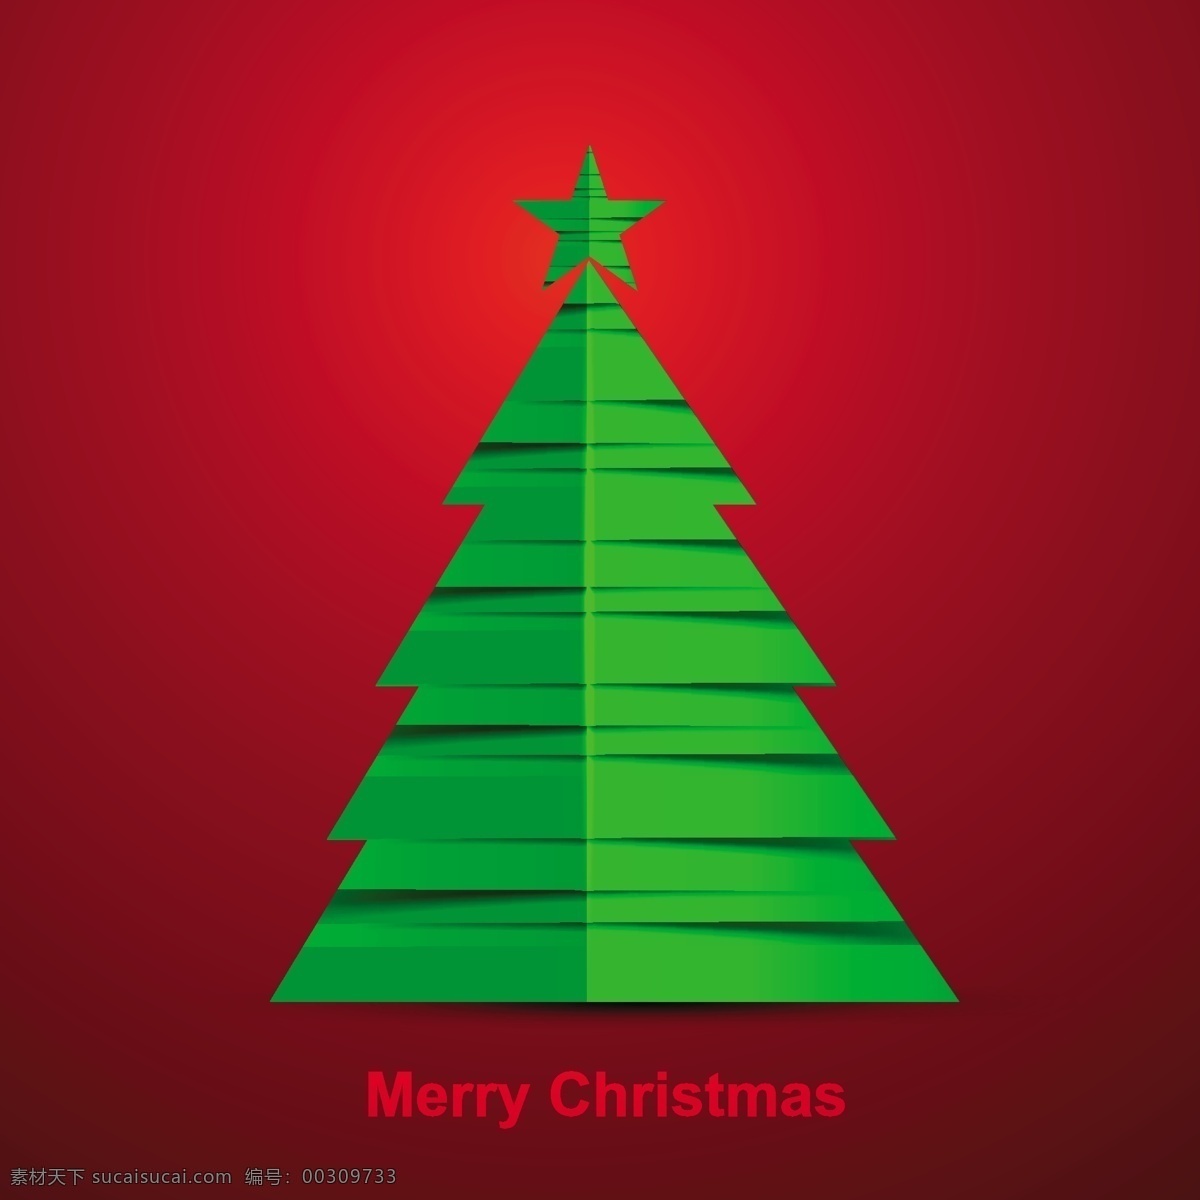 美丽的圣诞树 背景 圣诞树 抽象 明星卡 绿色 模板 圣诞红 绿色的背景 壁纸 圣诞卡 圣诞 红色背景 庆典 事件 背景的绿色